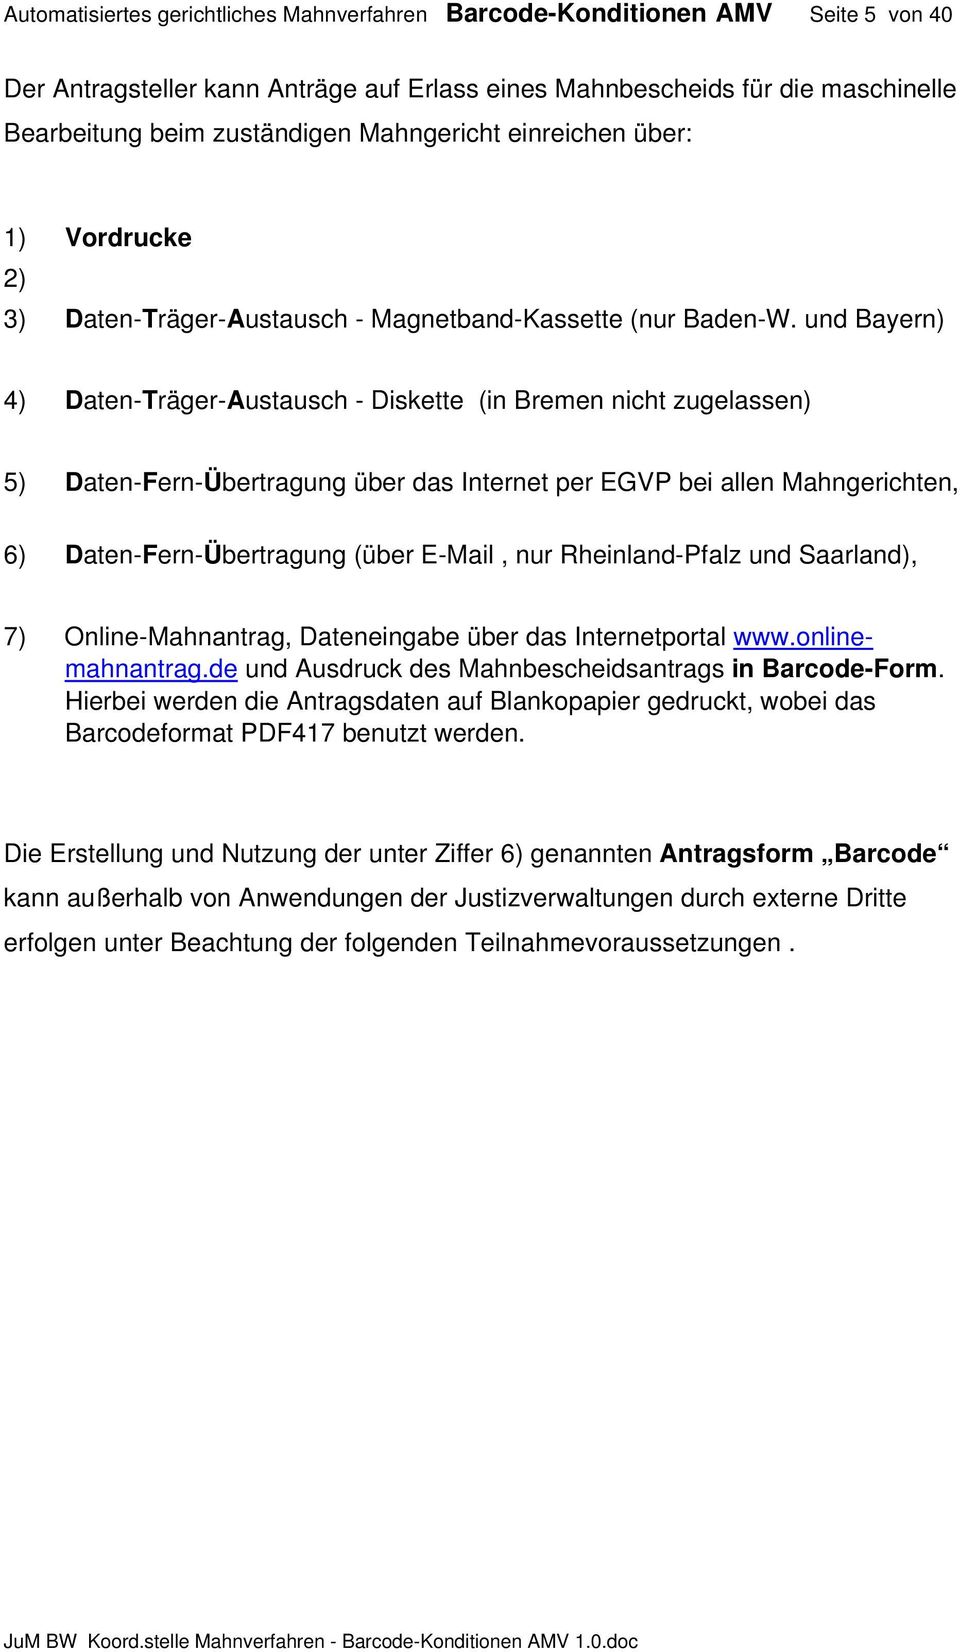 und Bayern) 4) Daten-Träger-Austausch - Diskette (in Bremen nicht zugelassen) 5) Daten-Fern-Übertragung über das Internet per EGVP bei allen Mahngerichten, 6) Daten-Fern-Übertragung (über E-Mail, nur